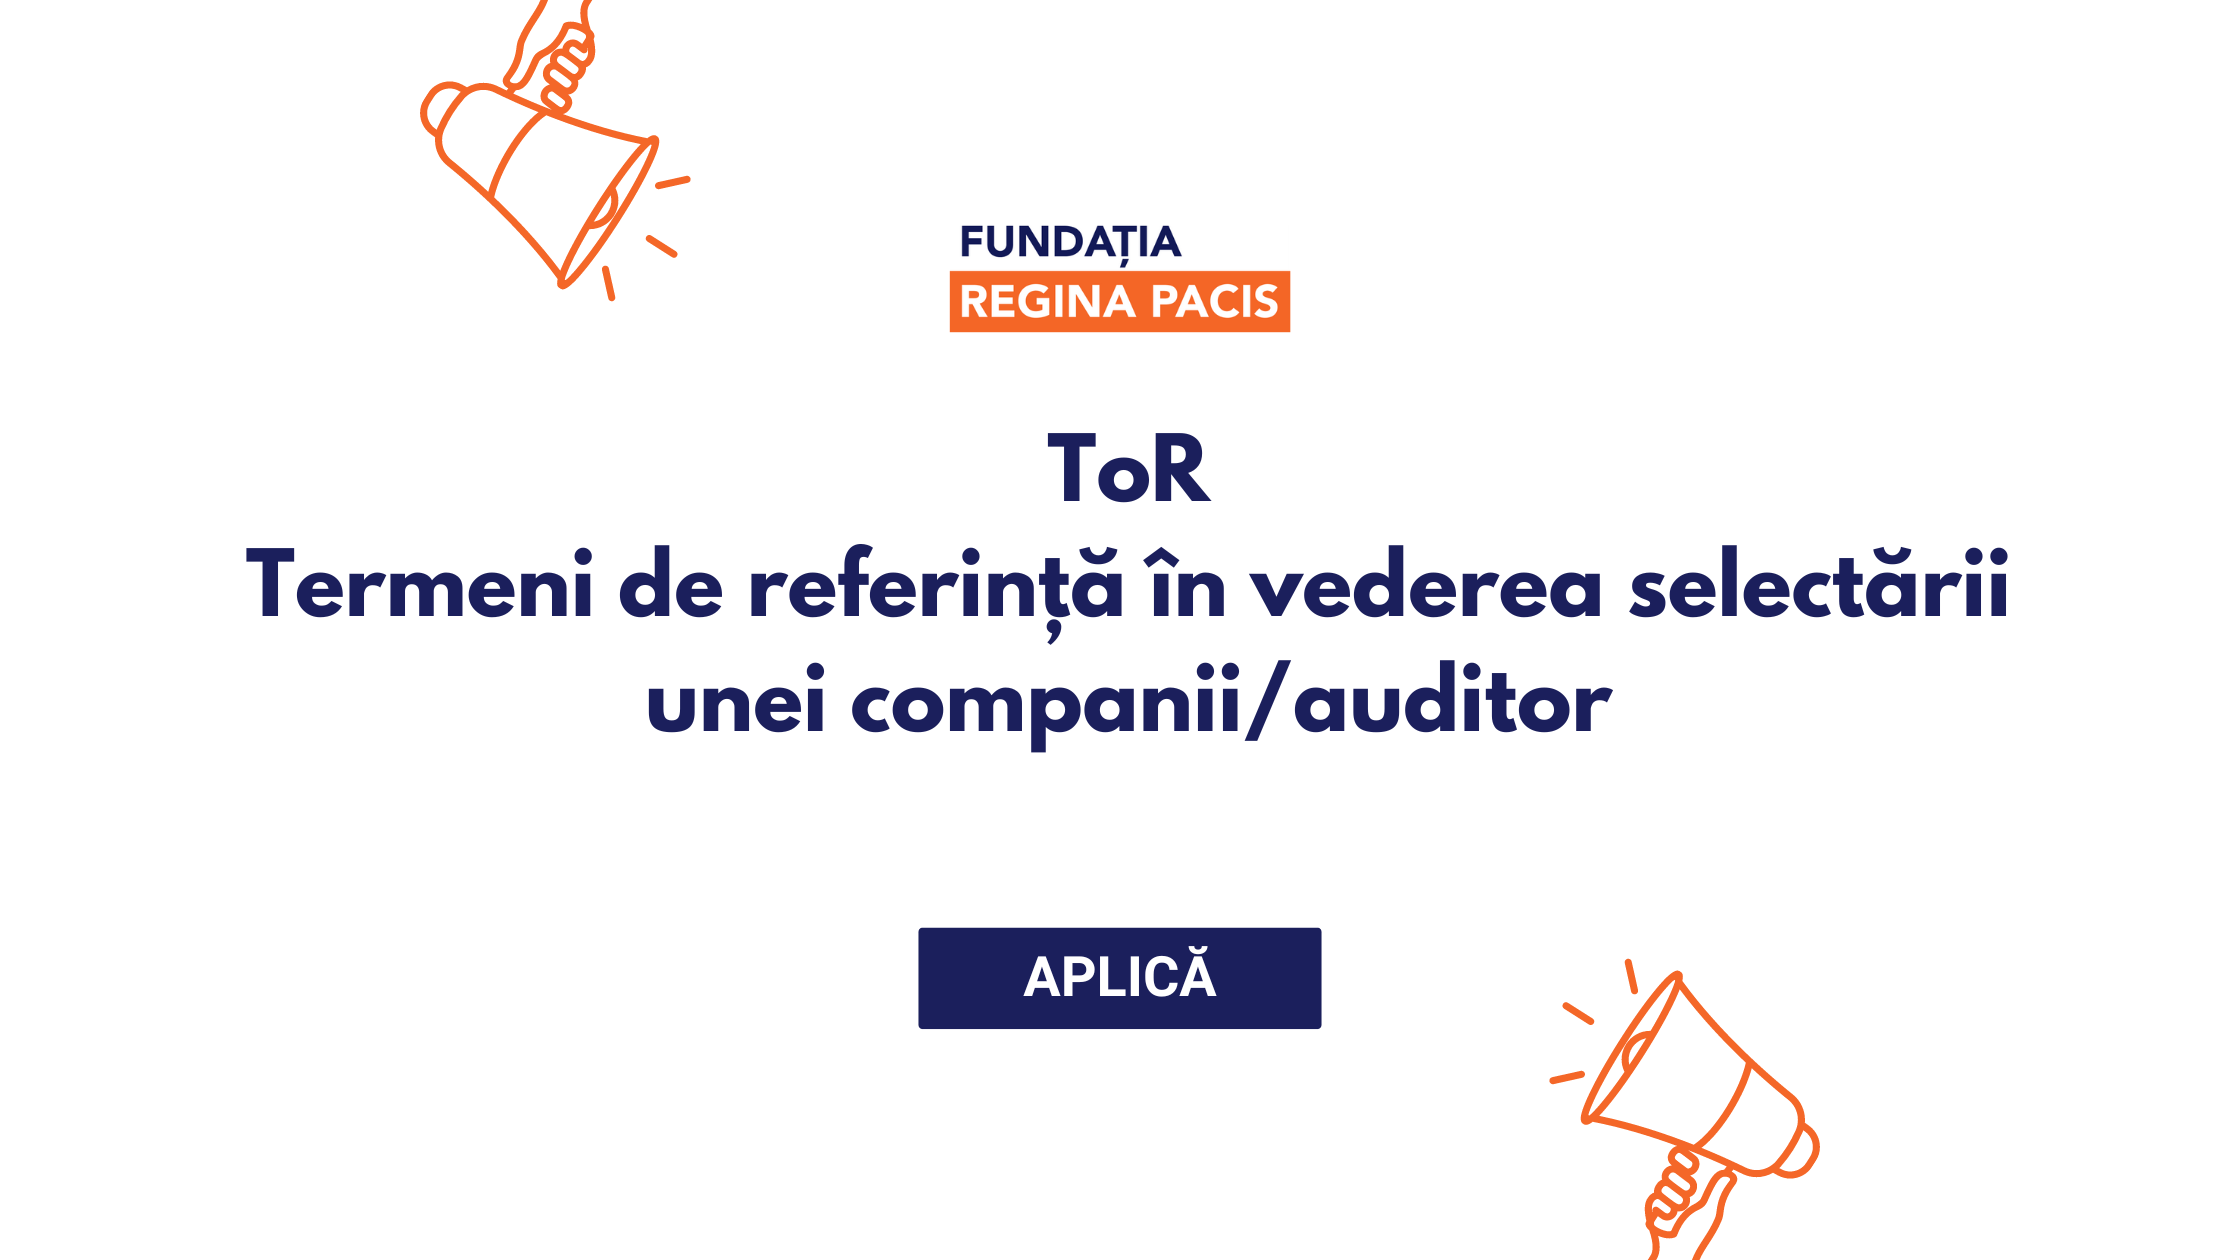 Fundația Regina Pacis anunță concurs pentru selectarea unei companii/auditor care va efectua auditul financiar